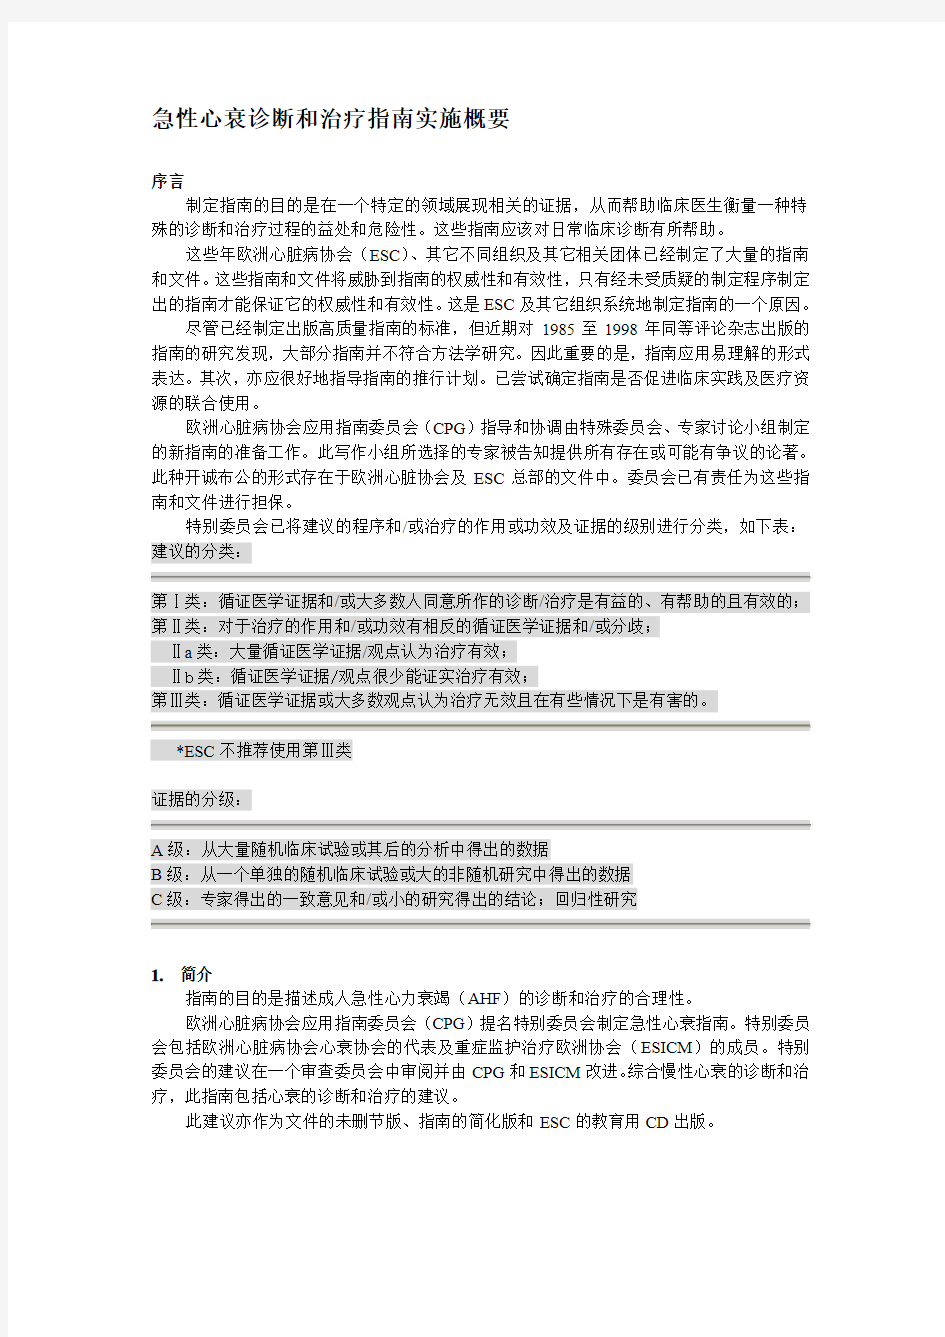 2005年ECS急性心衰治疗指南中文